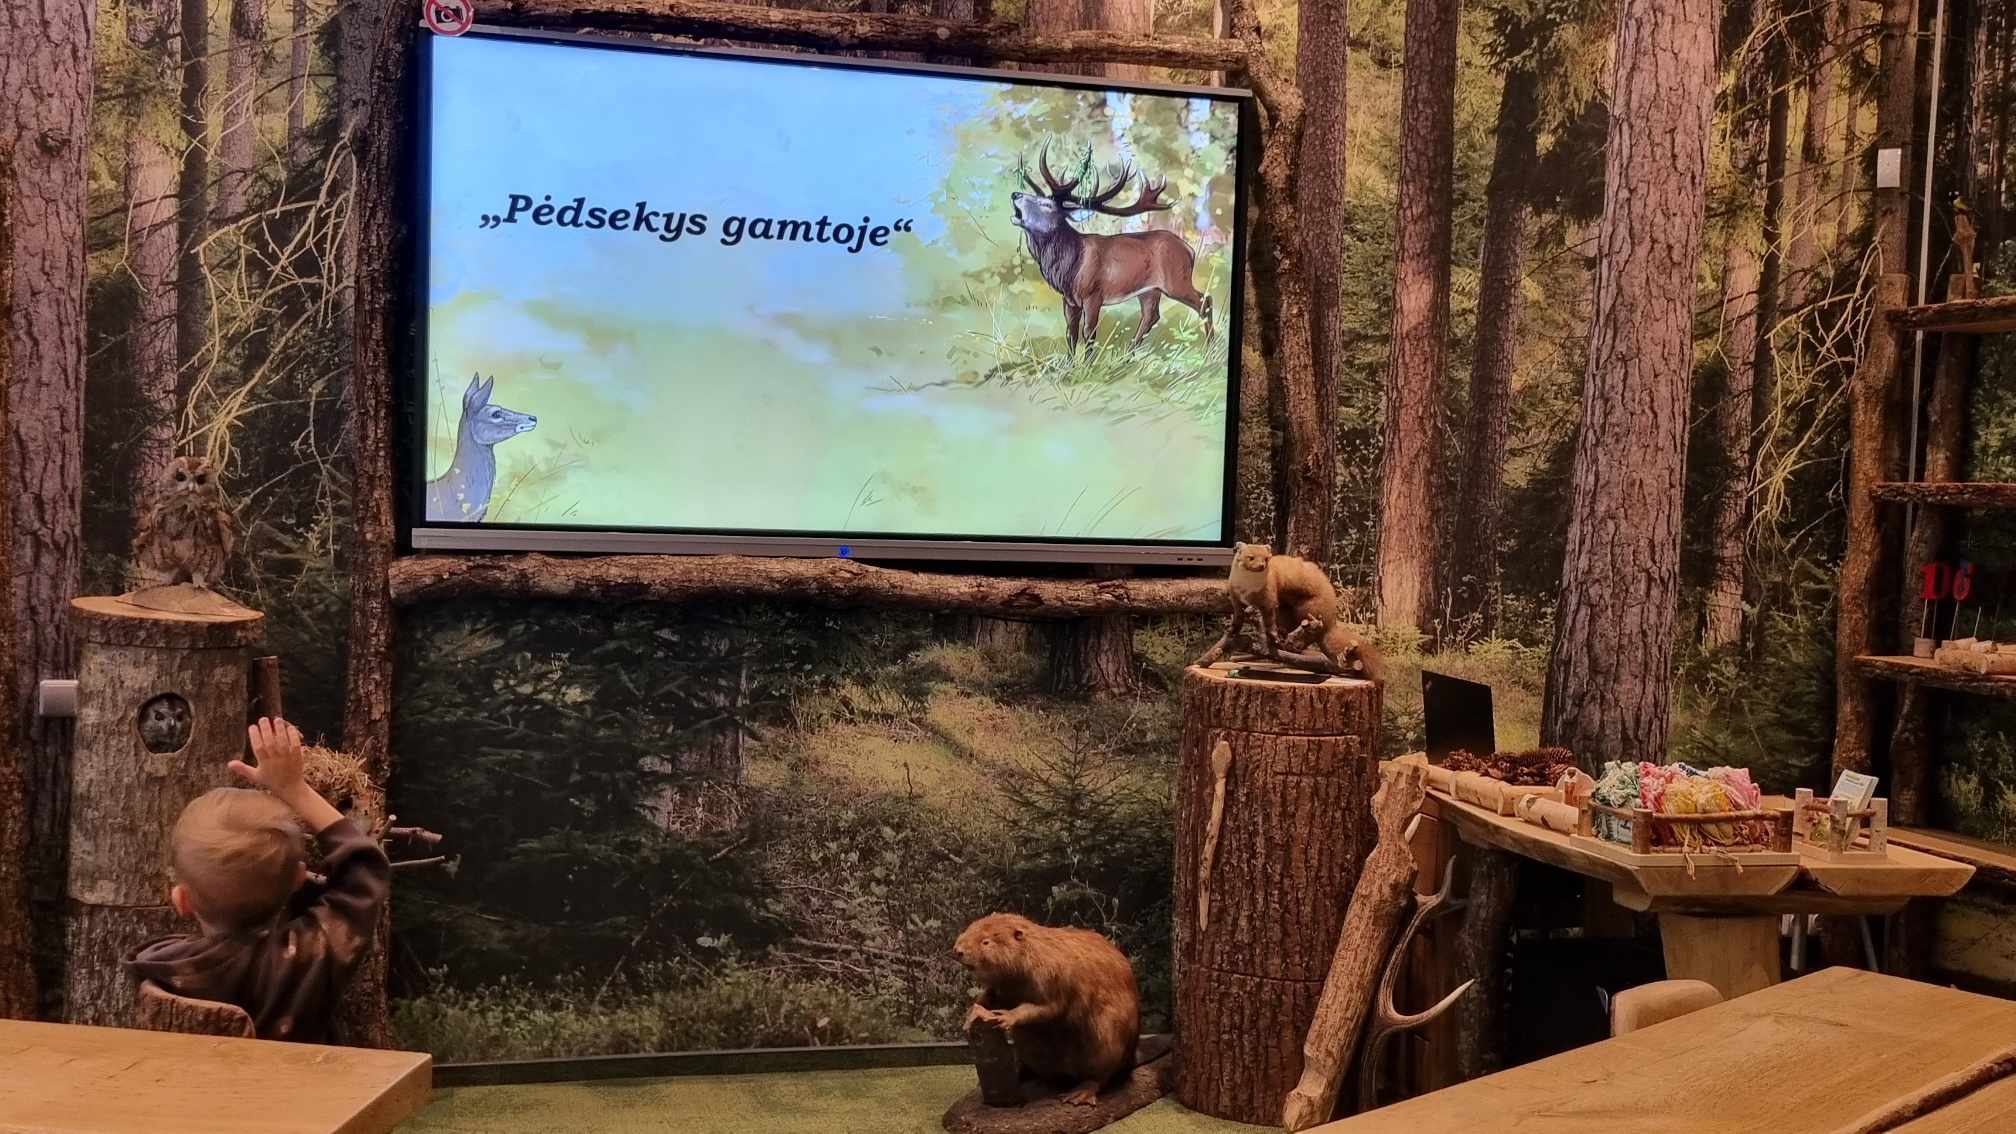 Edukacija Kauno T. Ivanausko zoologijos muziejuje  „Pėdsekys gamtoje“